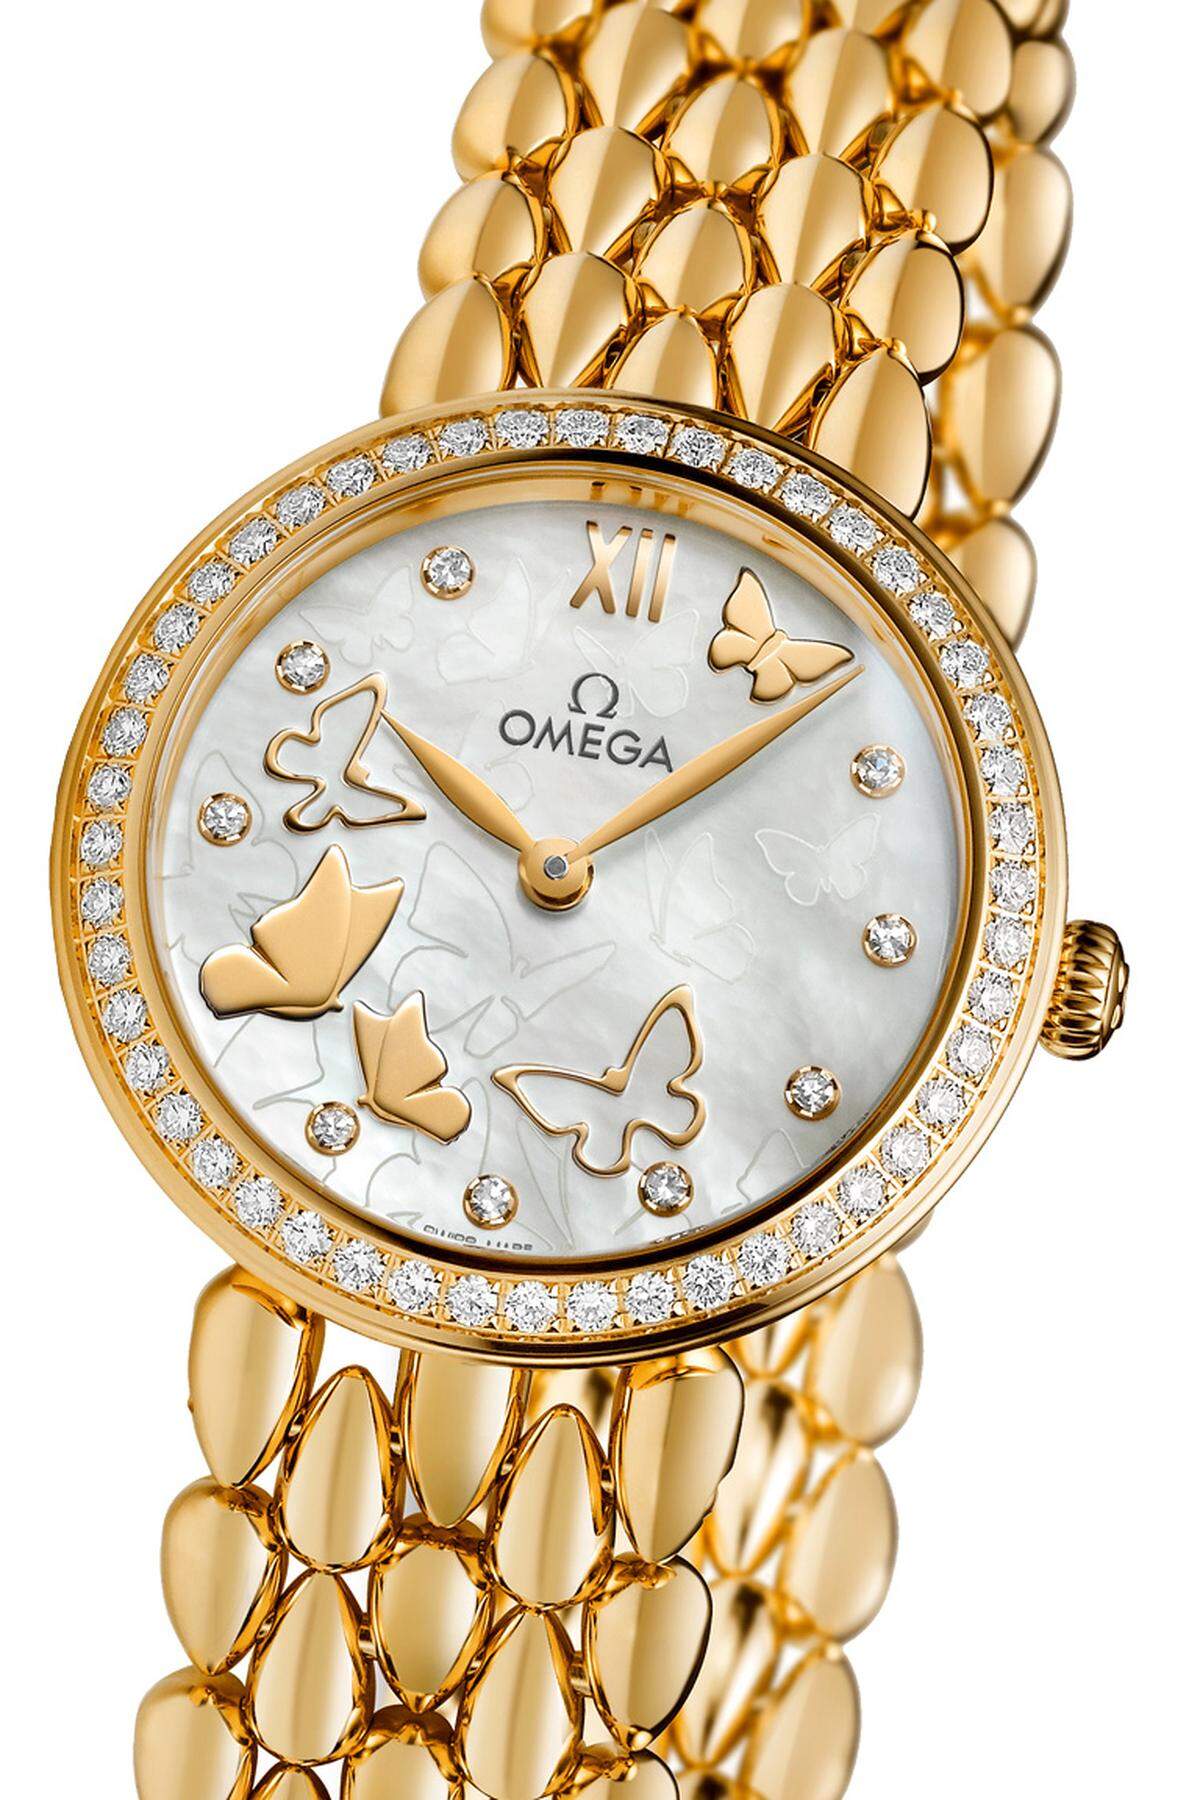 Der elegante Look der neuen „De Ville Prestige Dewdrop“ von Omega orientiert sich an der Omega-eigenen Schmuckkollektion. Die Uhr mit ihrem fein gearbeiteten Armband in Tautropfenform ist entweder in Gelb- oder Rotgold und in zwei Größen (32,7 und 27,4 mm) erhältlich.